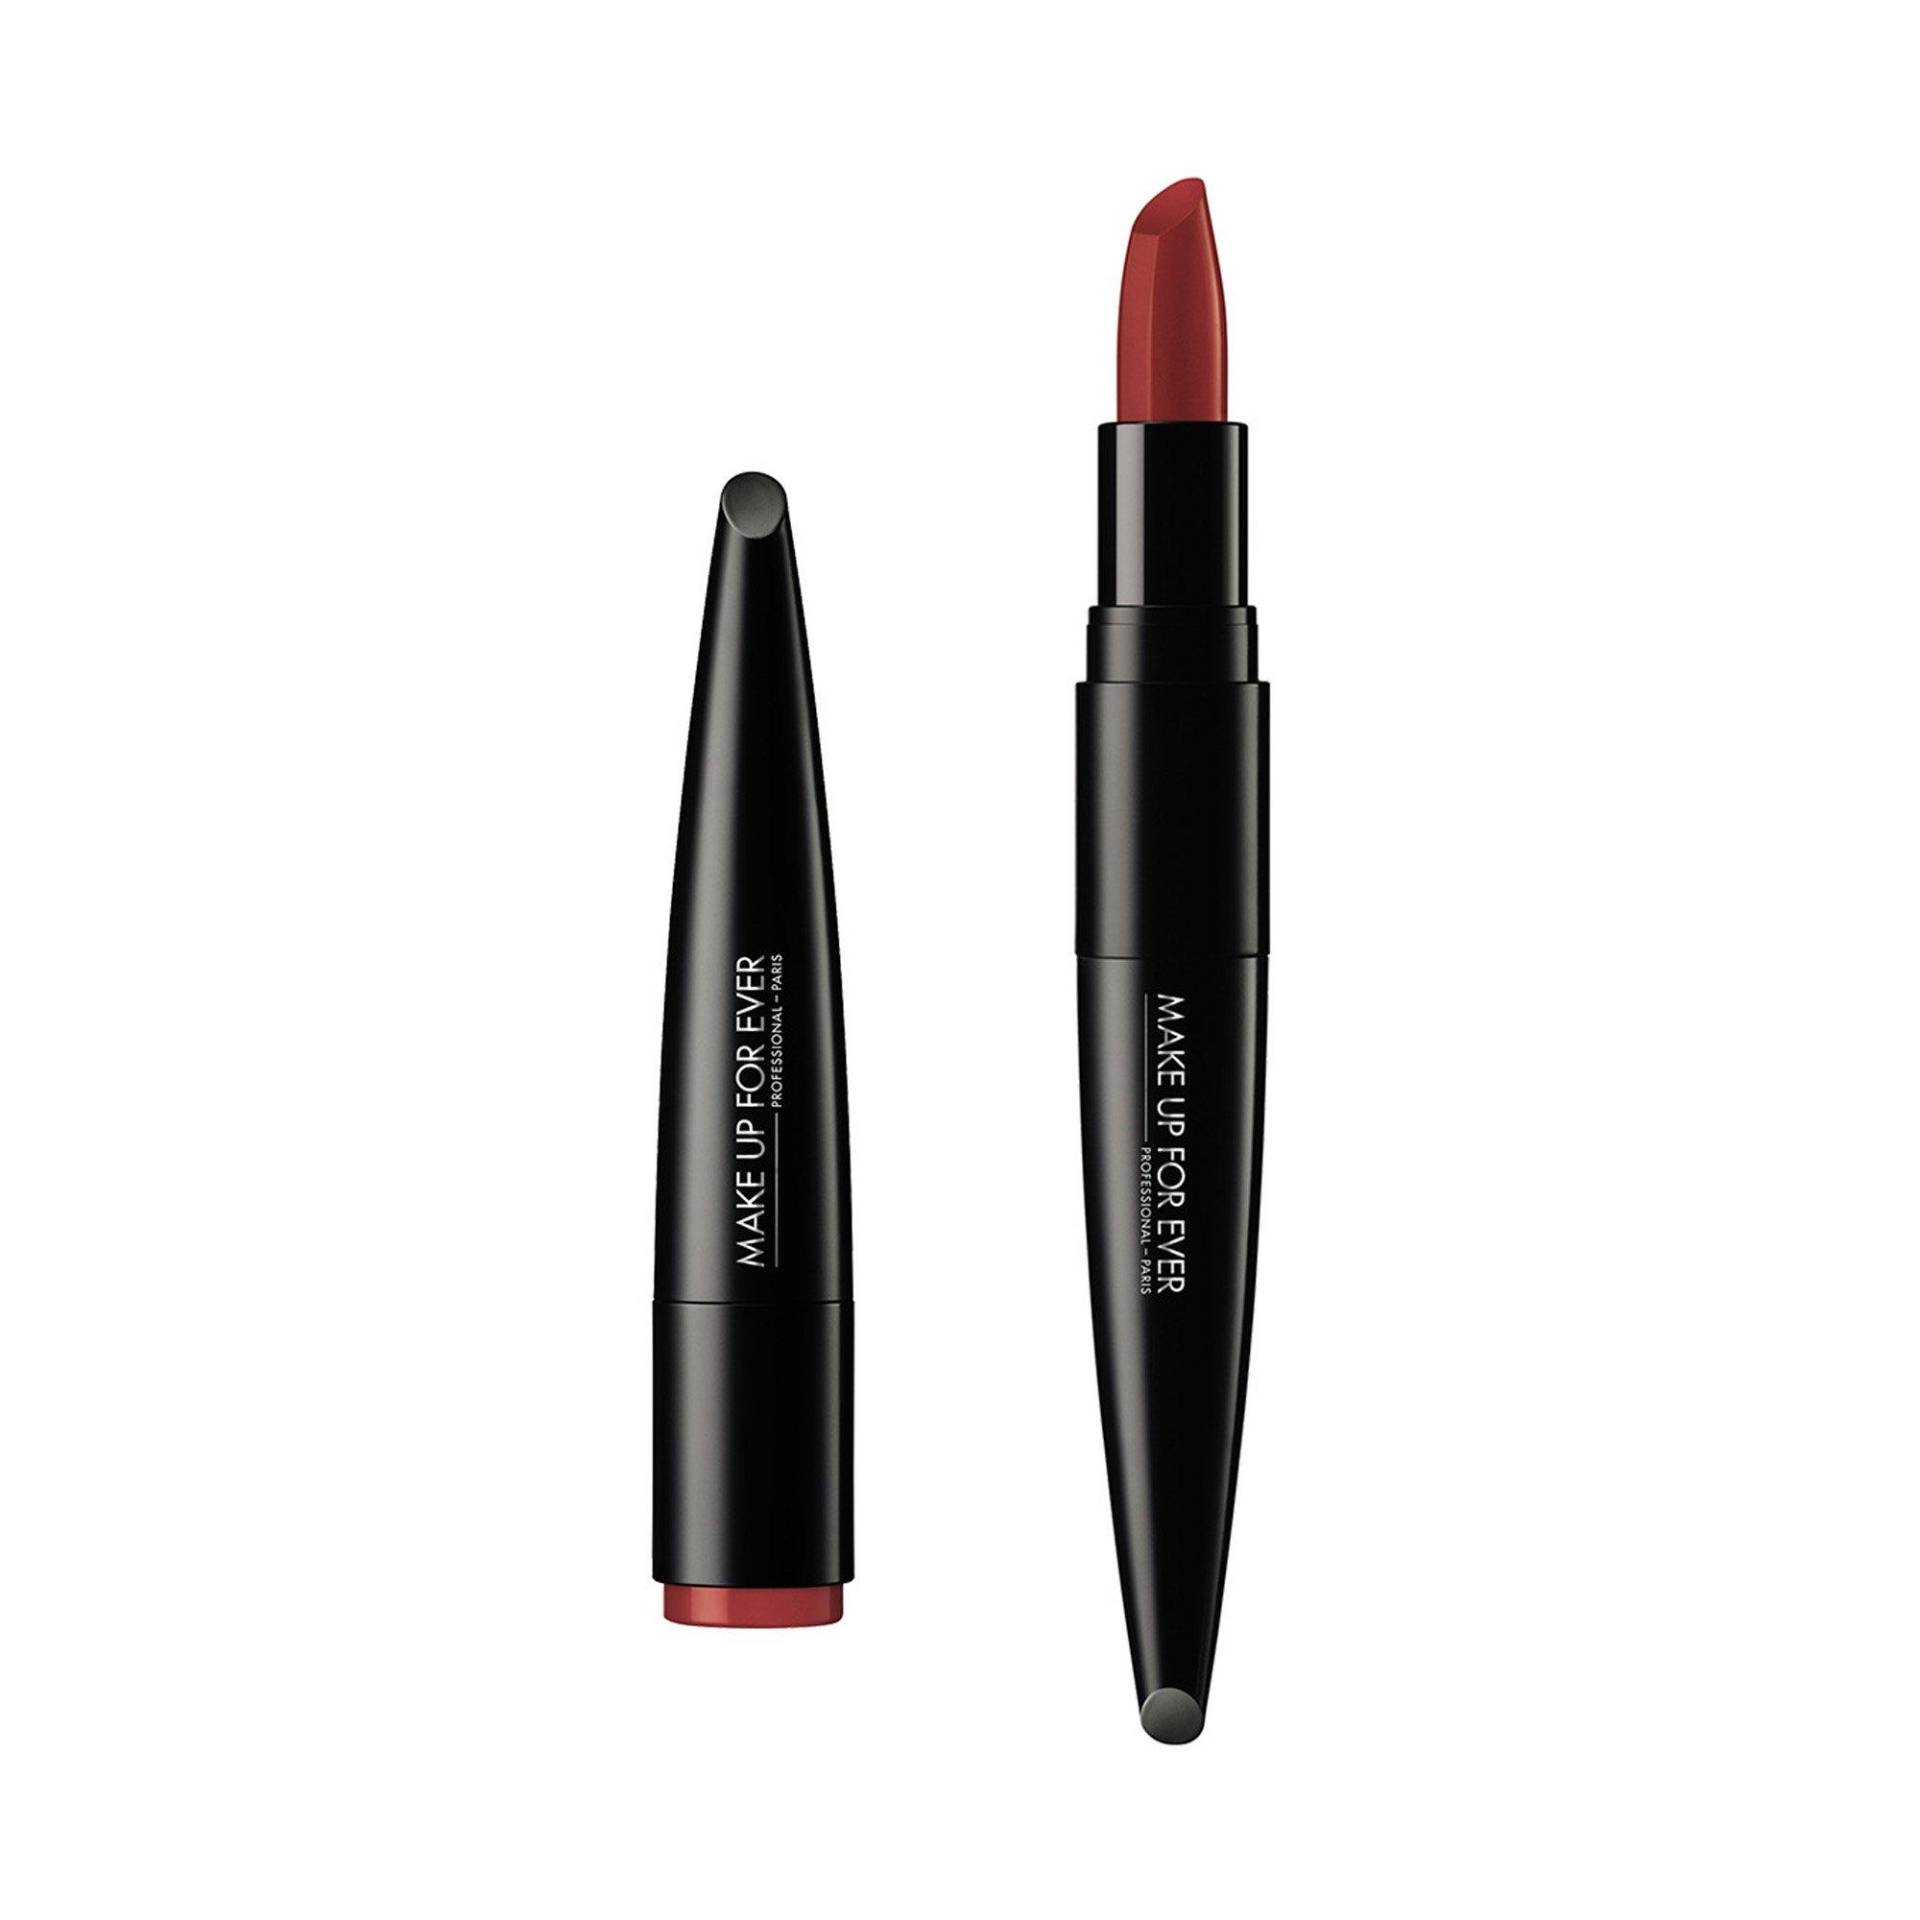 Rouge Artist Lipstick Damen  3.2 g von Make up For ever